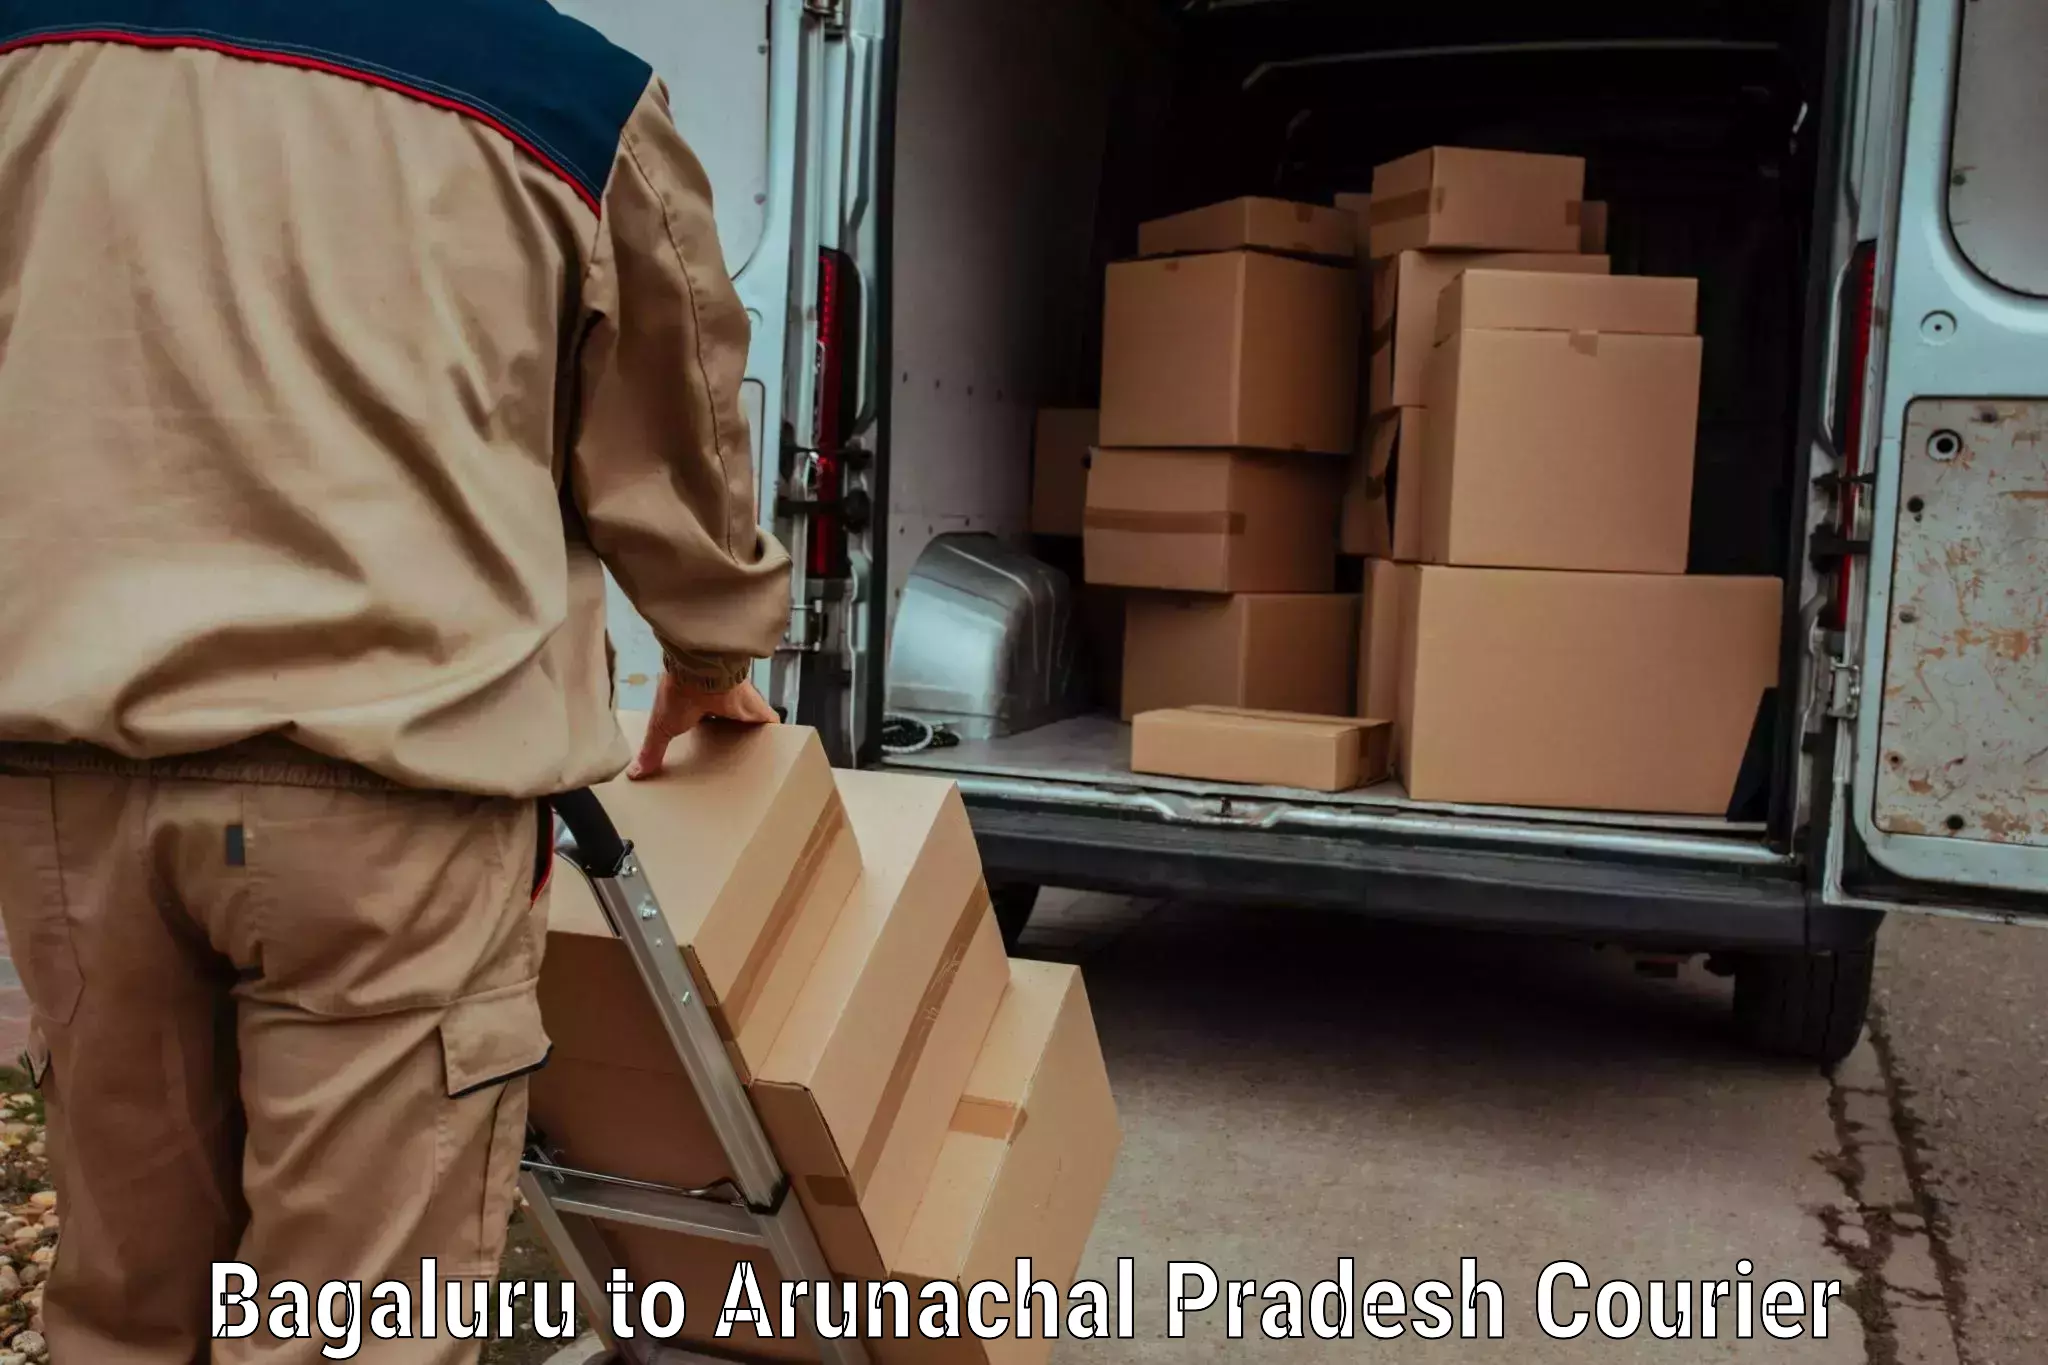 Baggage transport management Bagaluru to Arunachal Pradesh